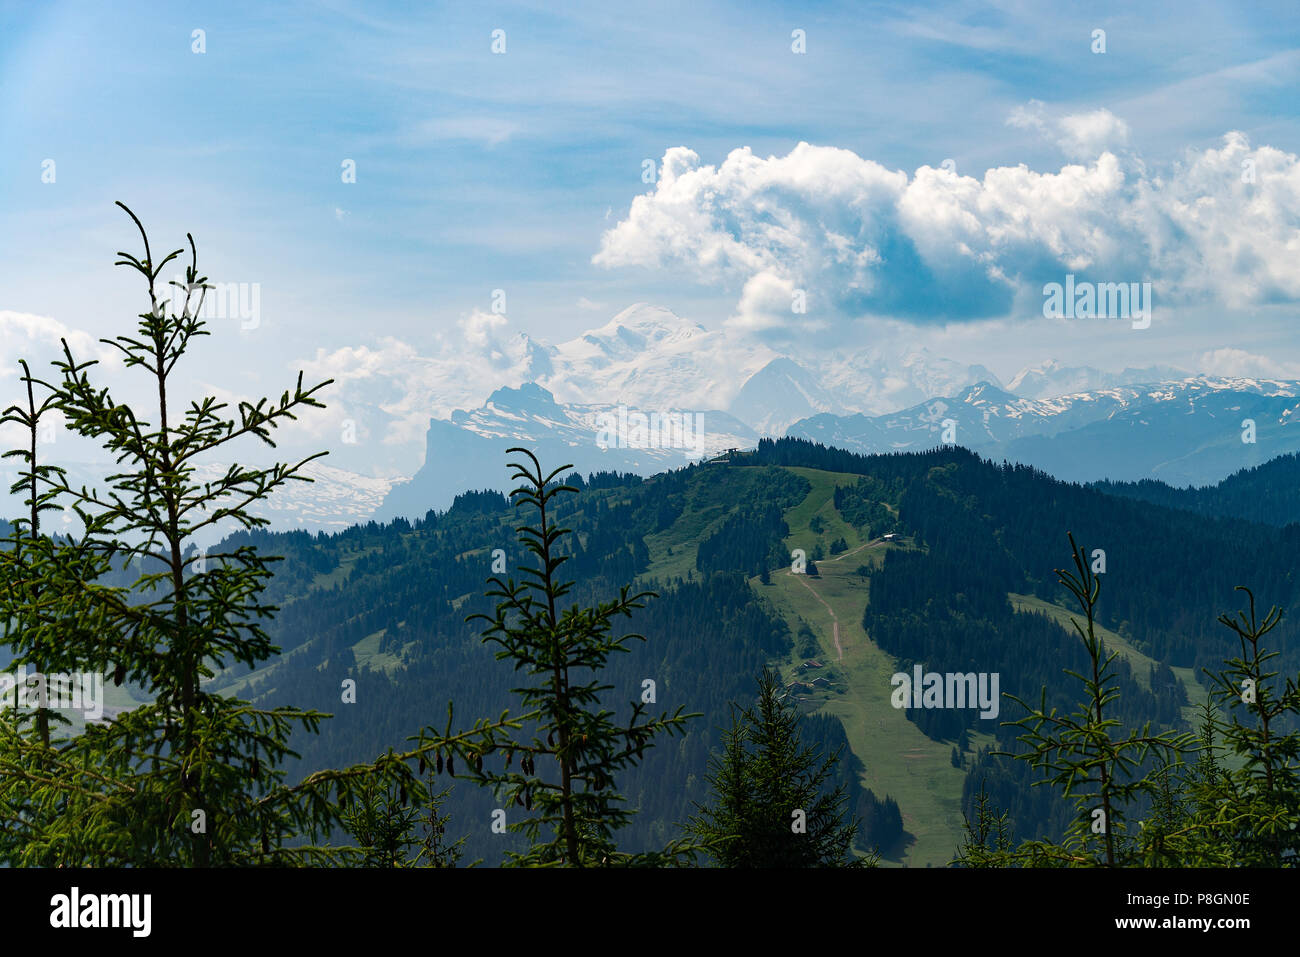 La hermosa Mont Blanc se eleva en la distancia en los Alpes franceses de Les Gets Haute-Savoie Portes du Soleil Francia Foto de stock